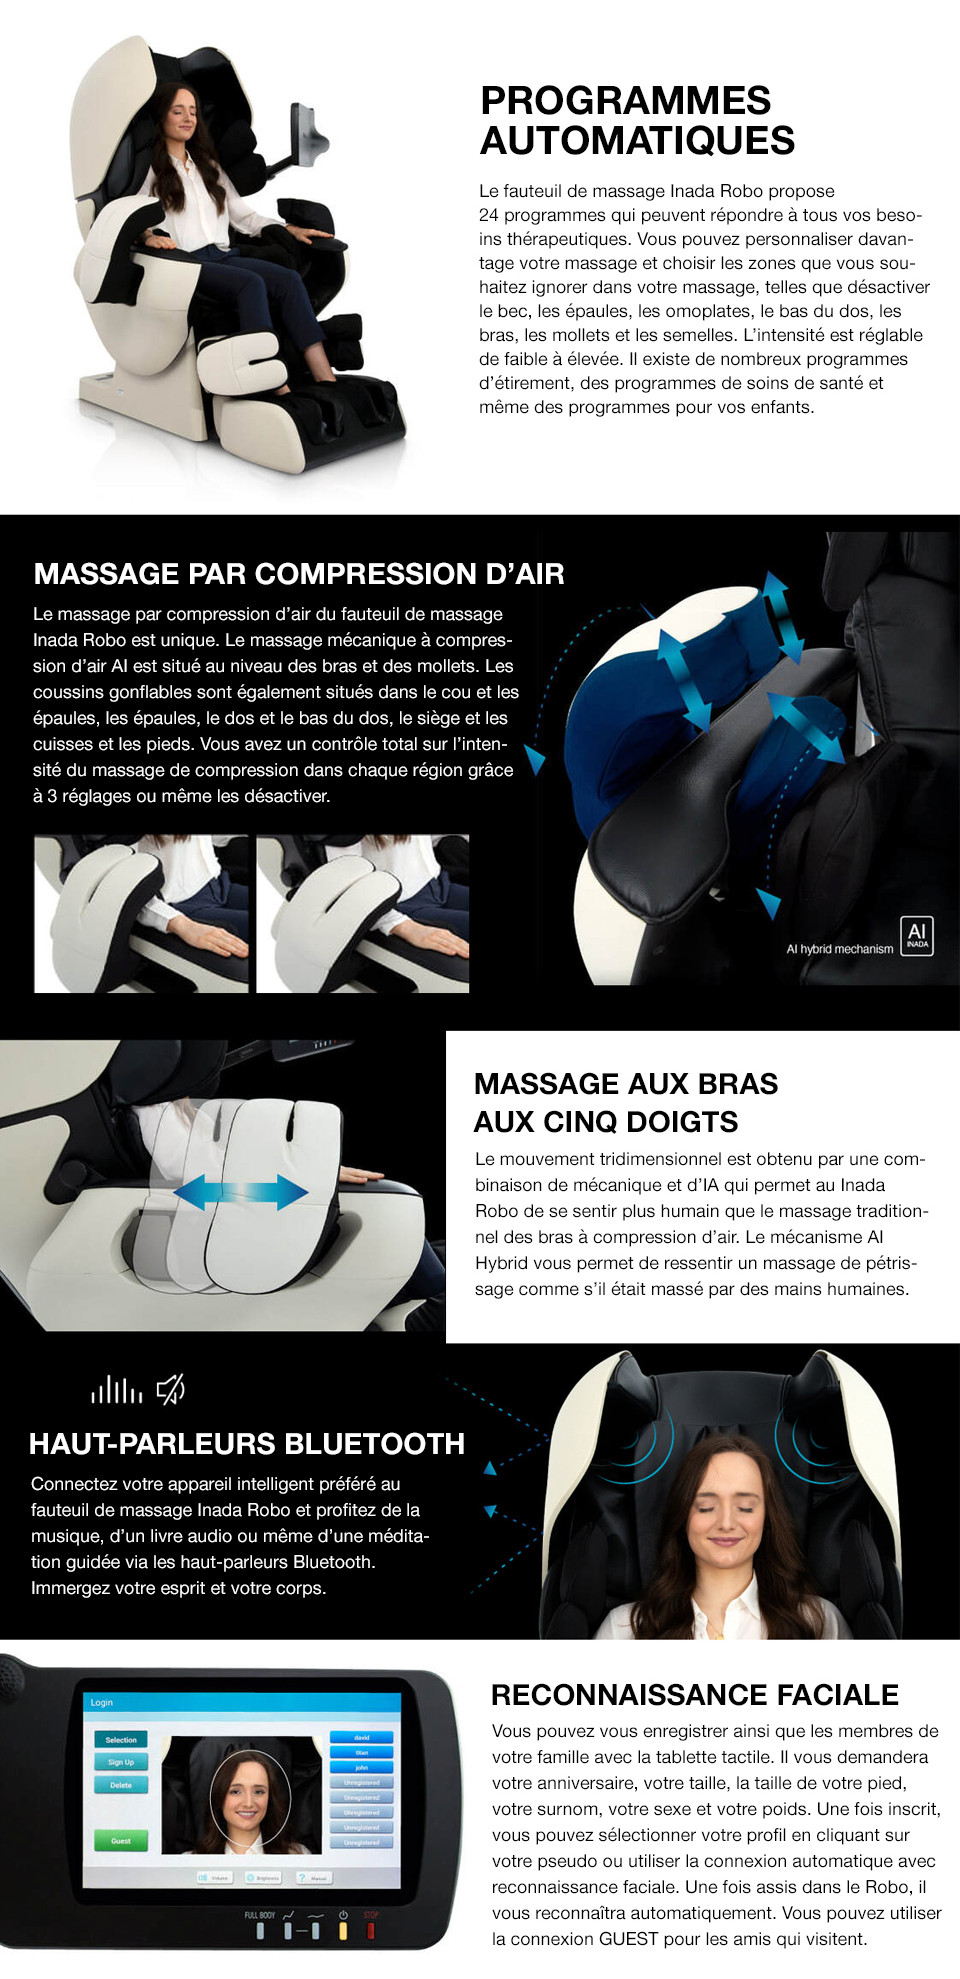 Technologie de massage automatique du fauteuil de Massage Therapina Robo de Inada